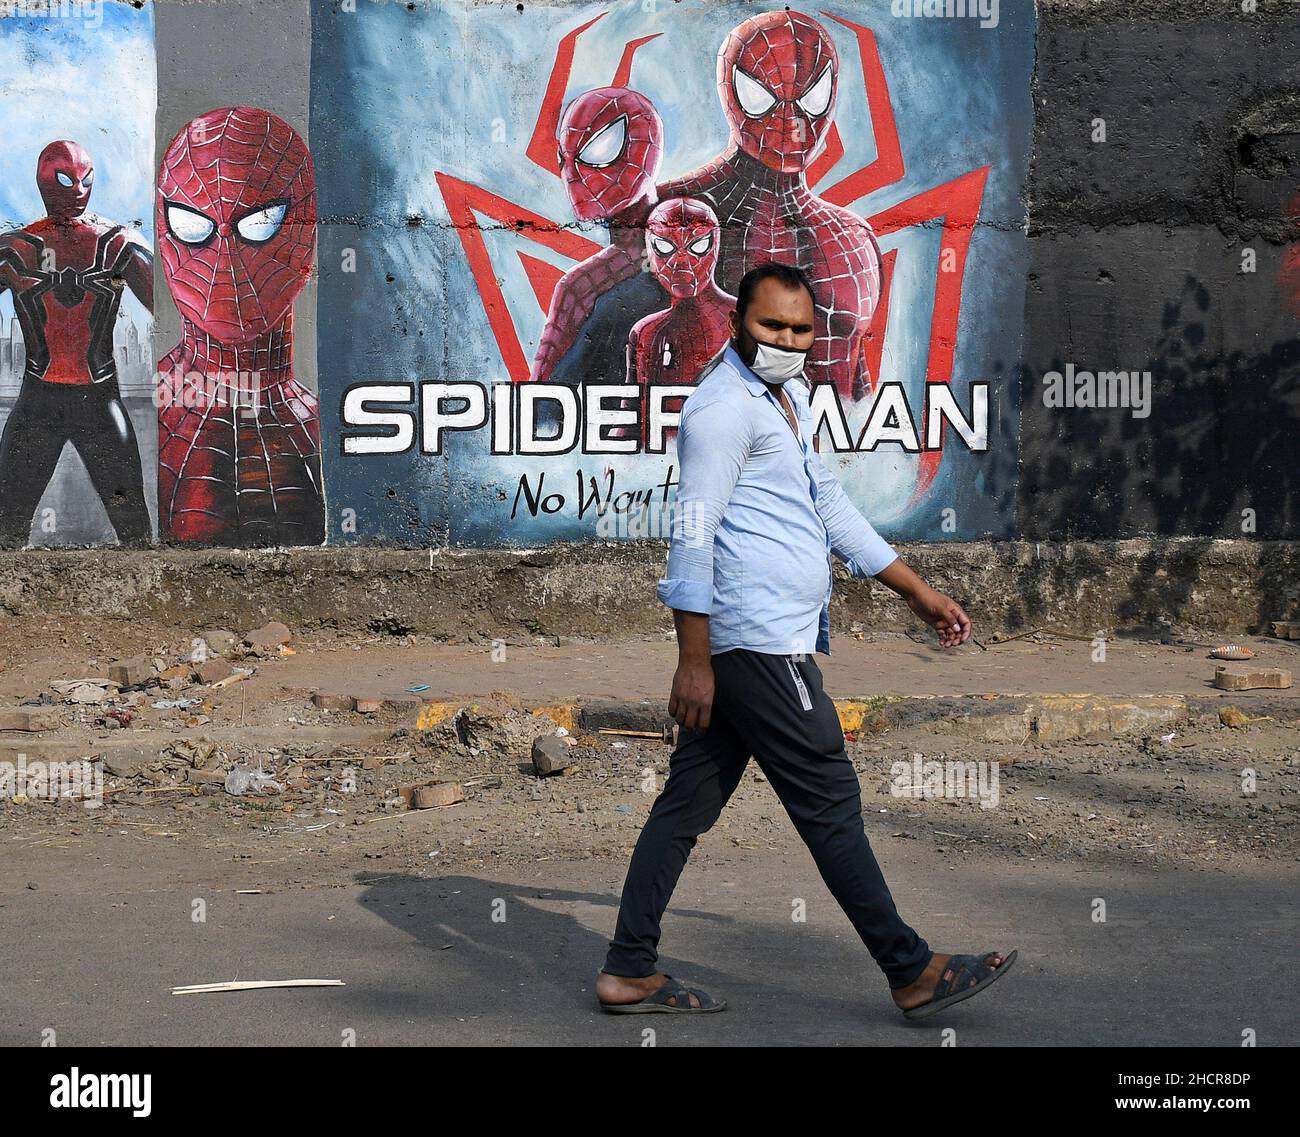 Maschere spiderman immagini e fotografie stock ad alta risoluzione